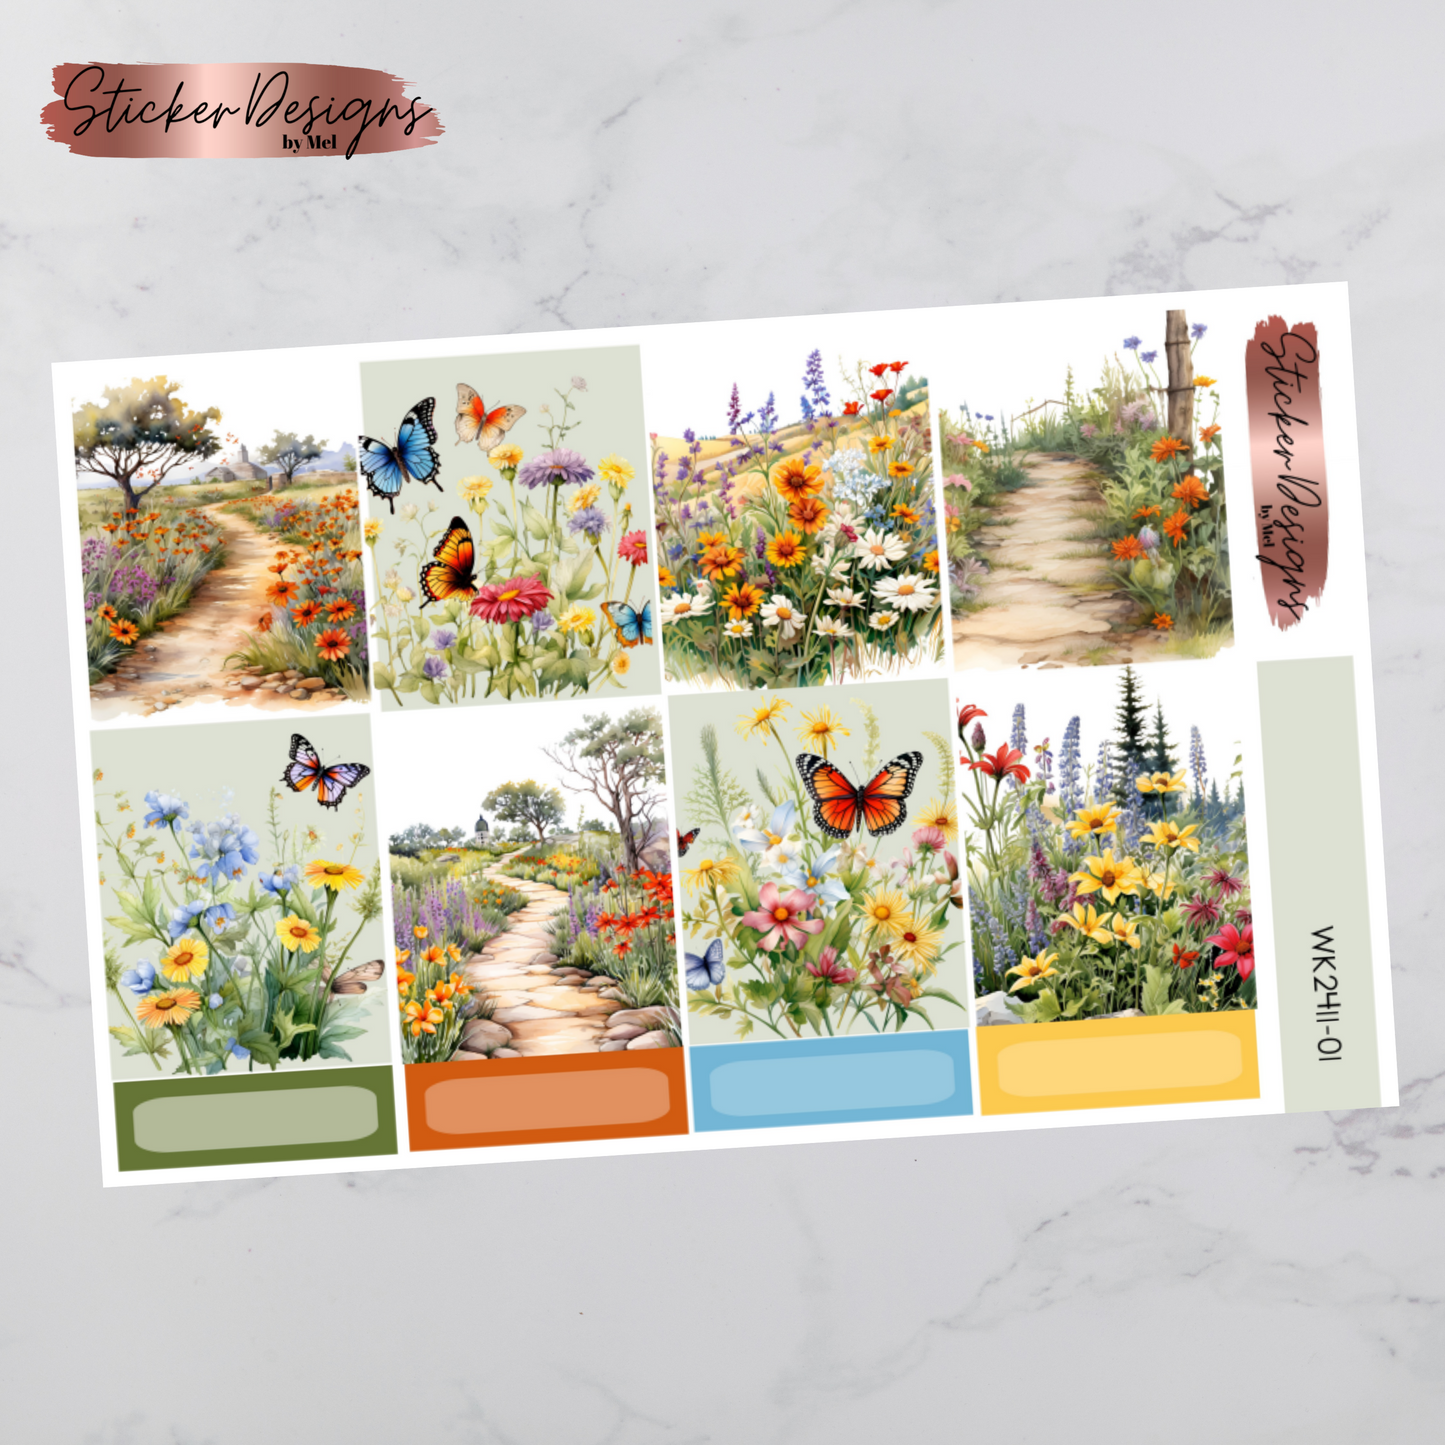 Weekly Kit 2411 - Wildflowers - Vertical Layout